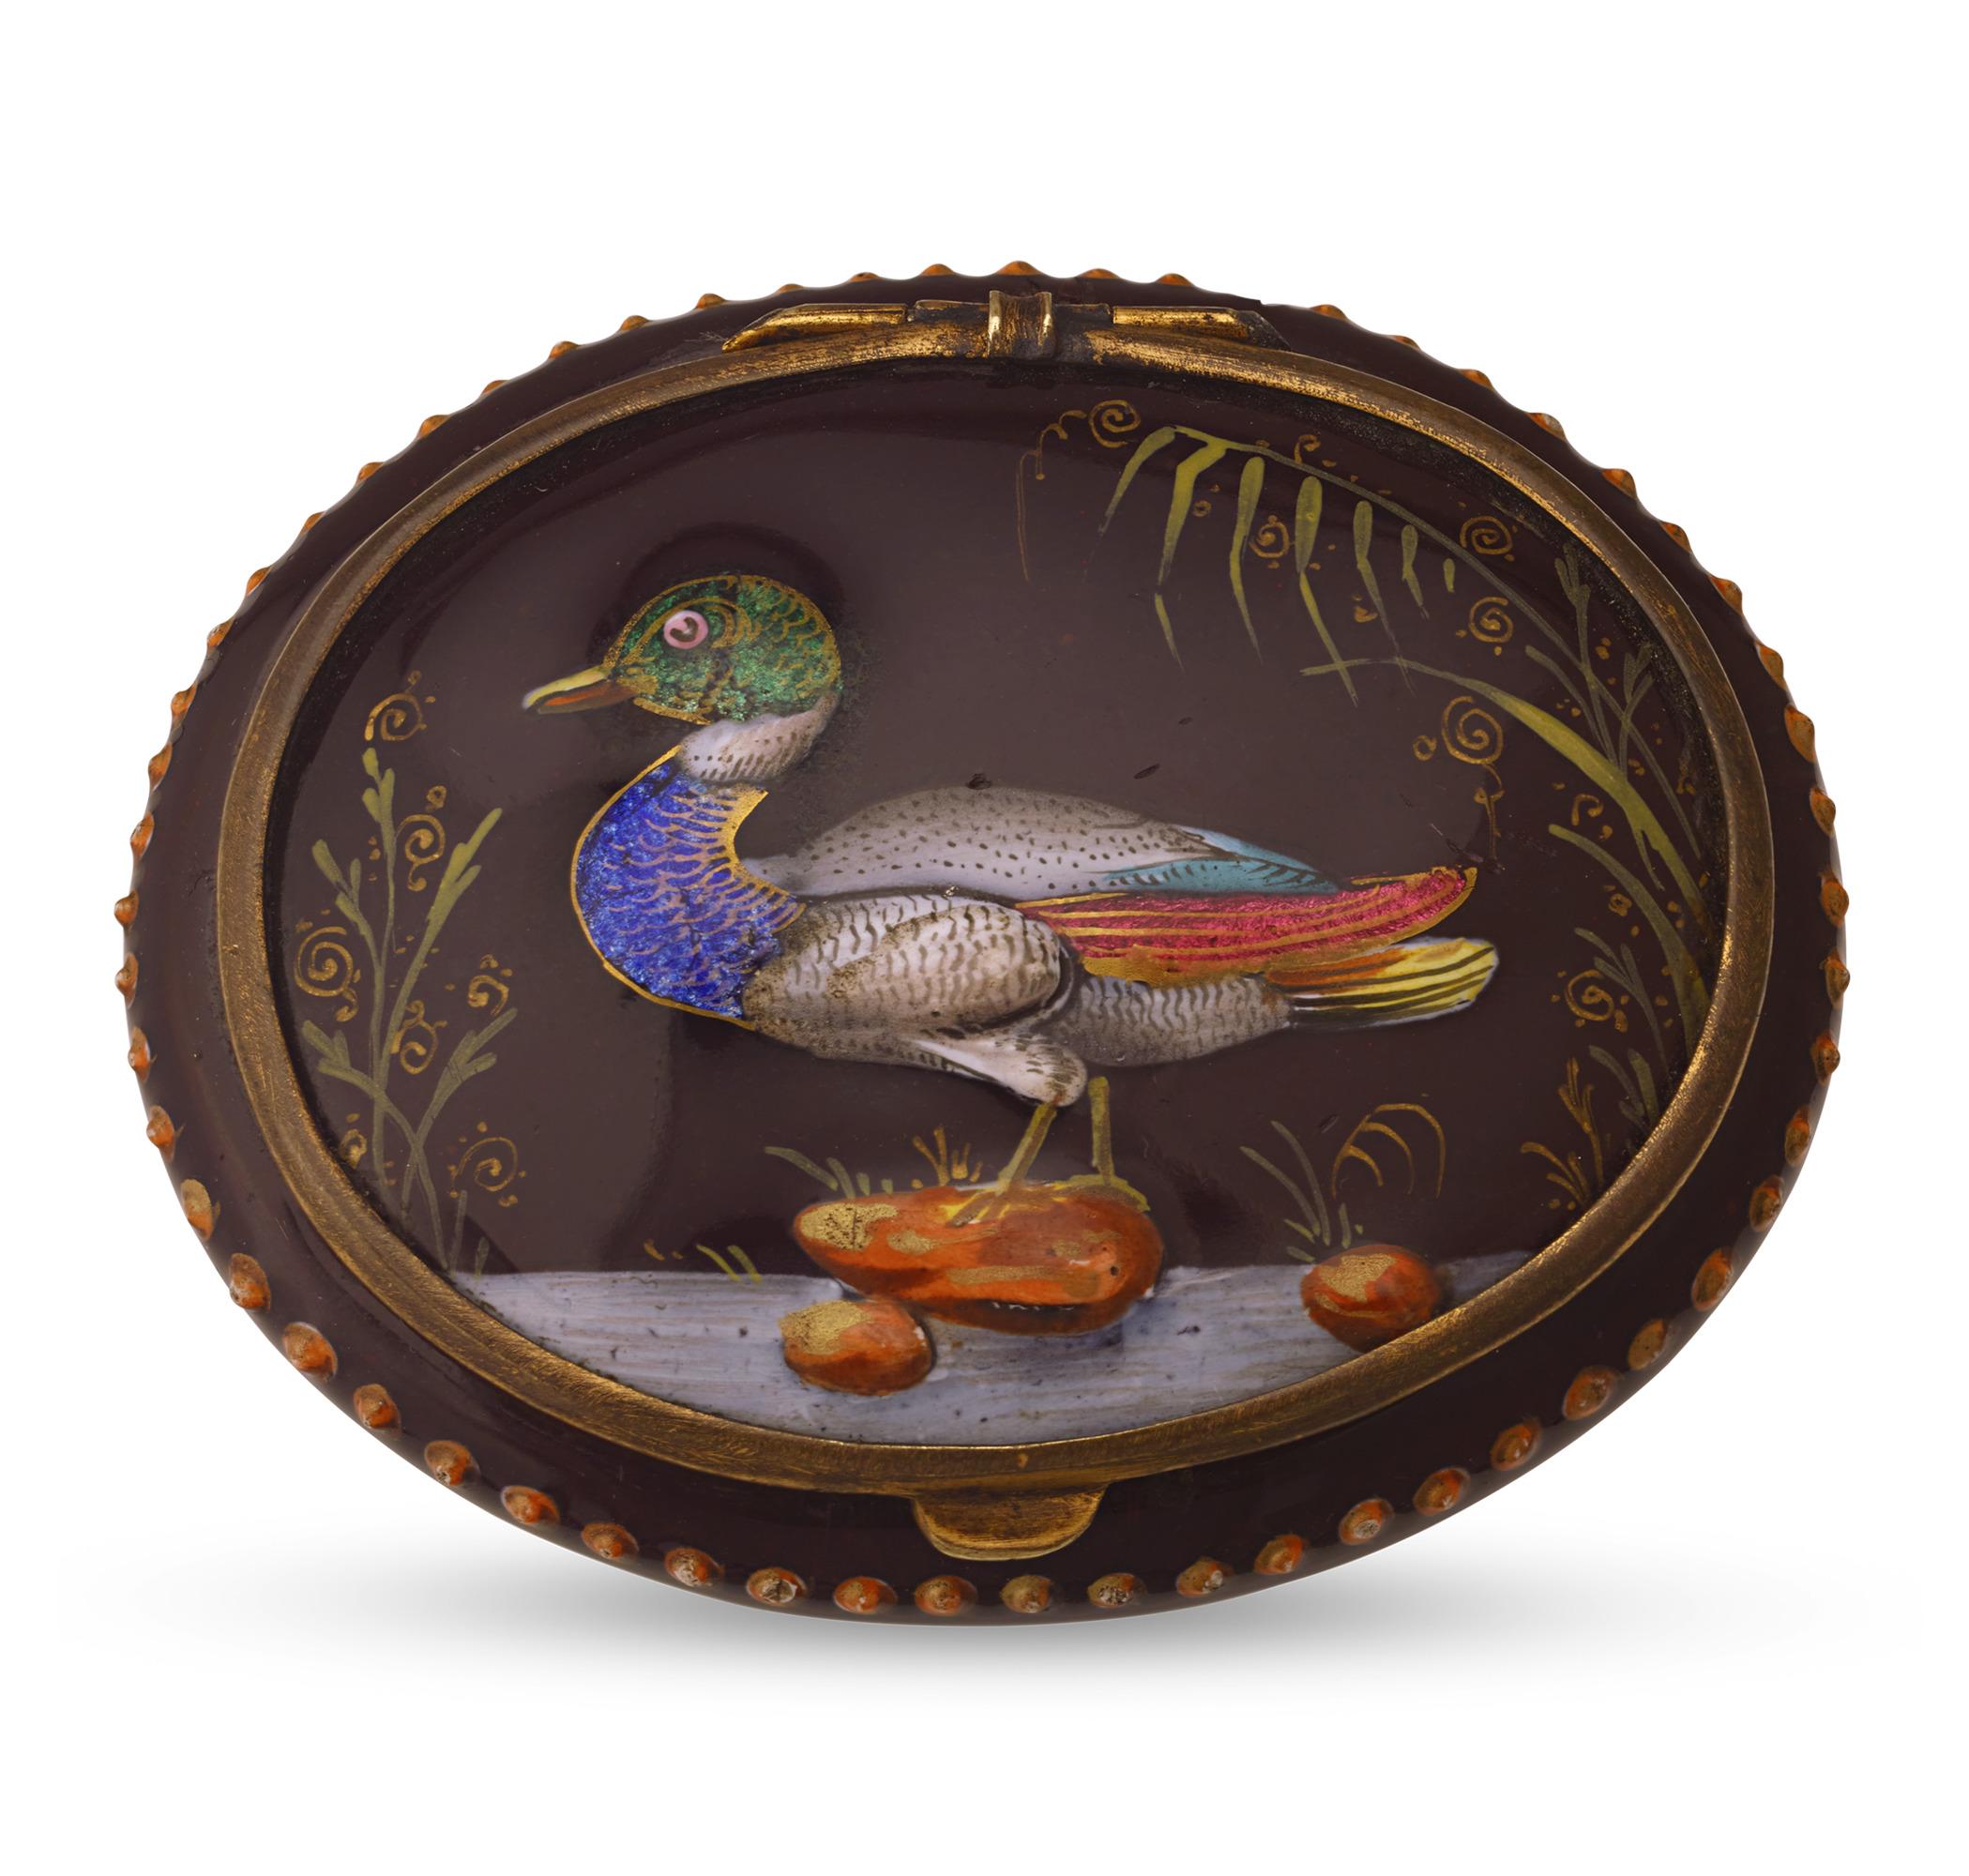 Diese reizvolle Dose aus Porzellan und Emaille ist ein perfektes Beispiel für die geschätzte französische Limoges-Tradition. Es zeigt ein sorgfältig von Hand appliziertes rosa und blaues Blumenmotiv auf braunem Hintergrund. Der Deckel ist mit